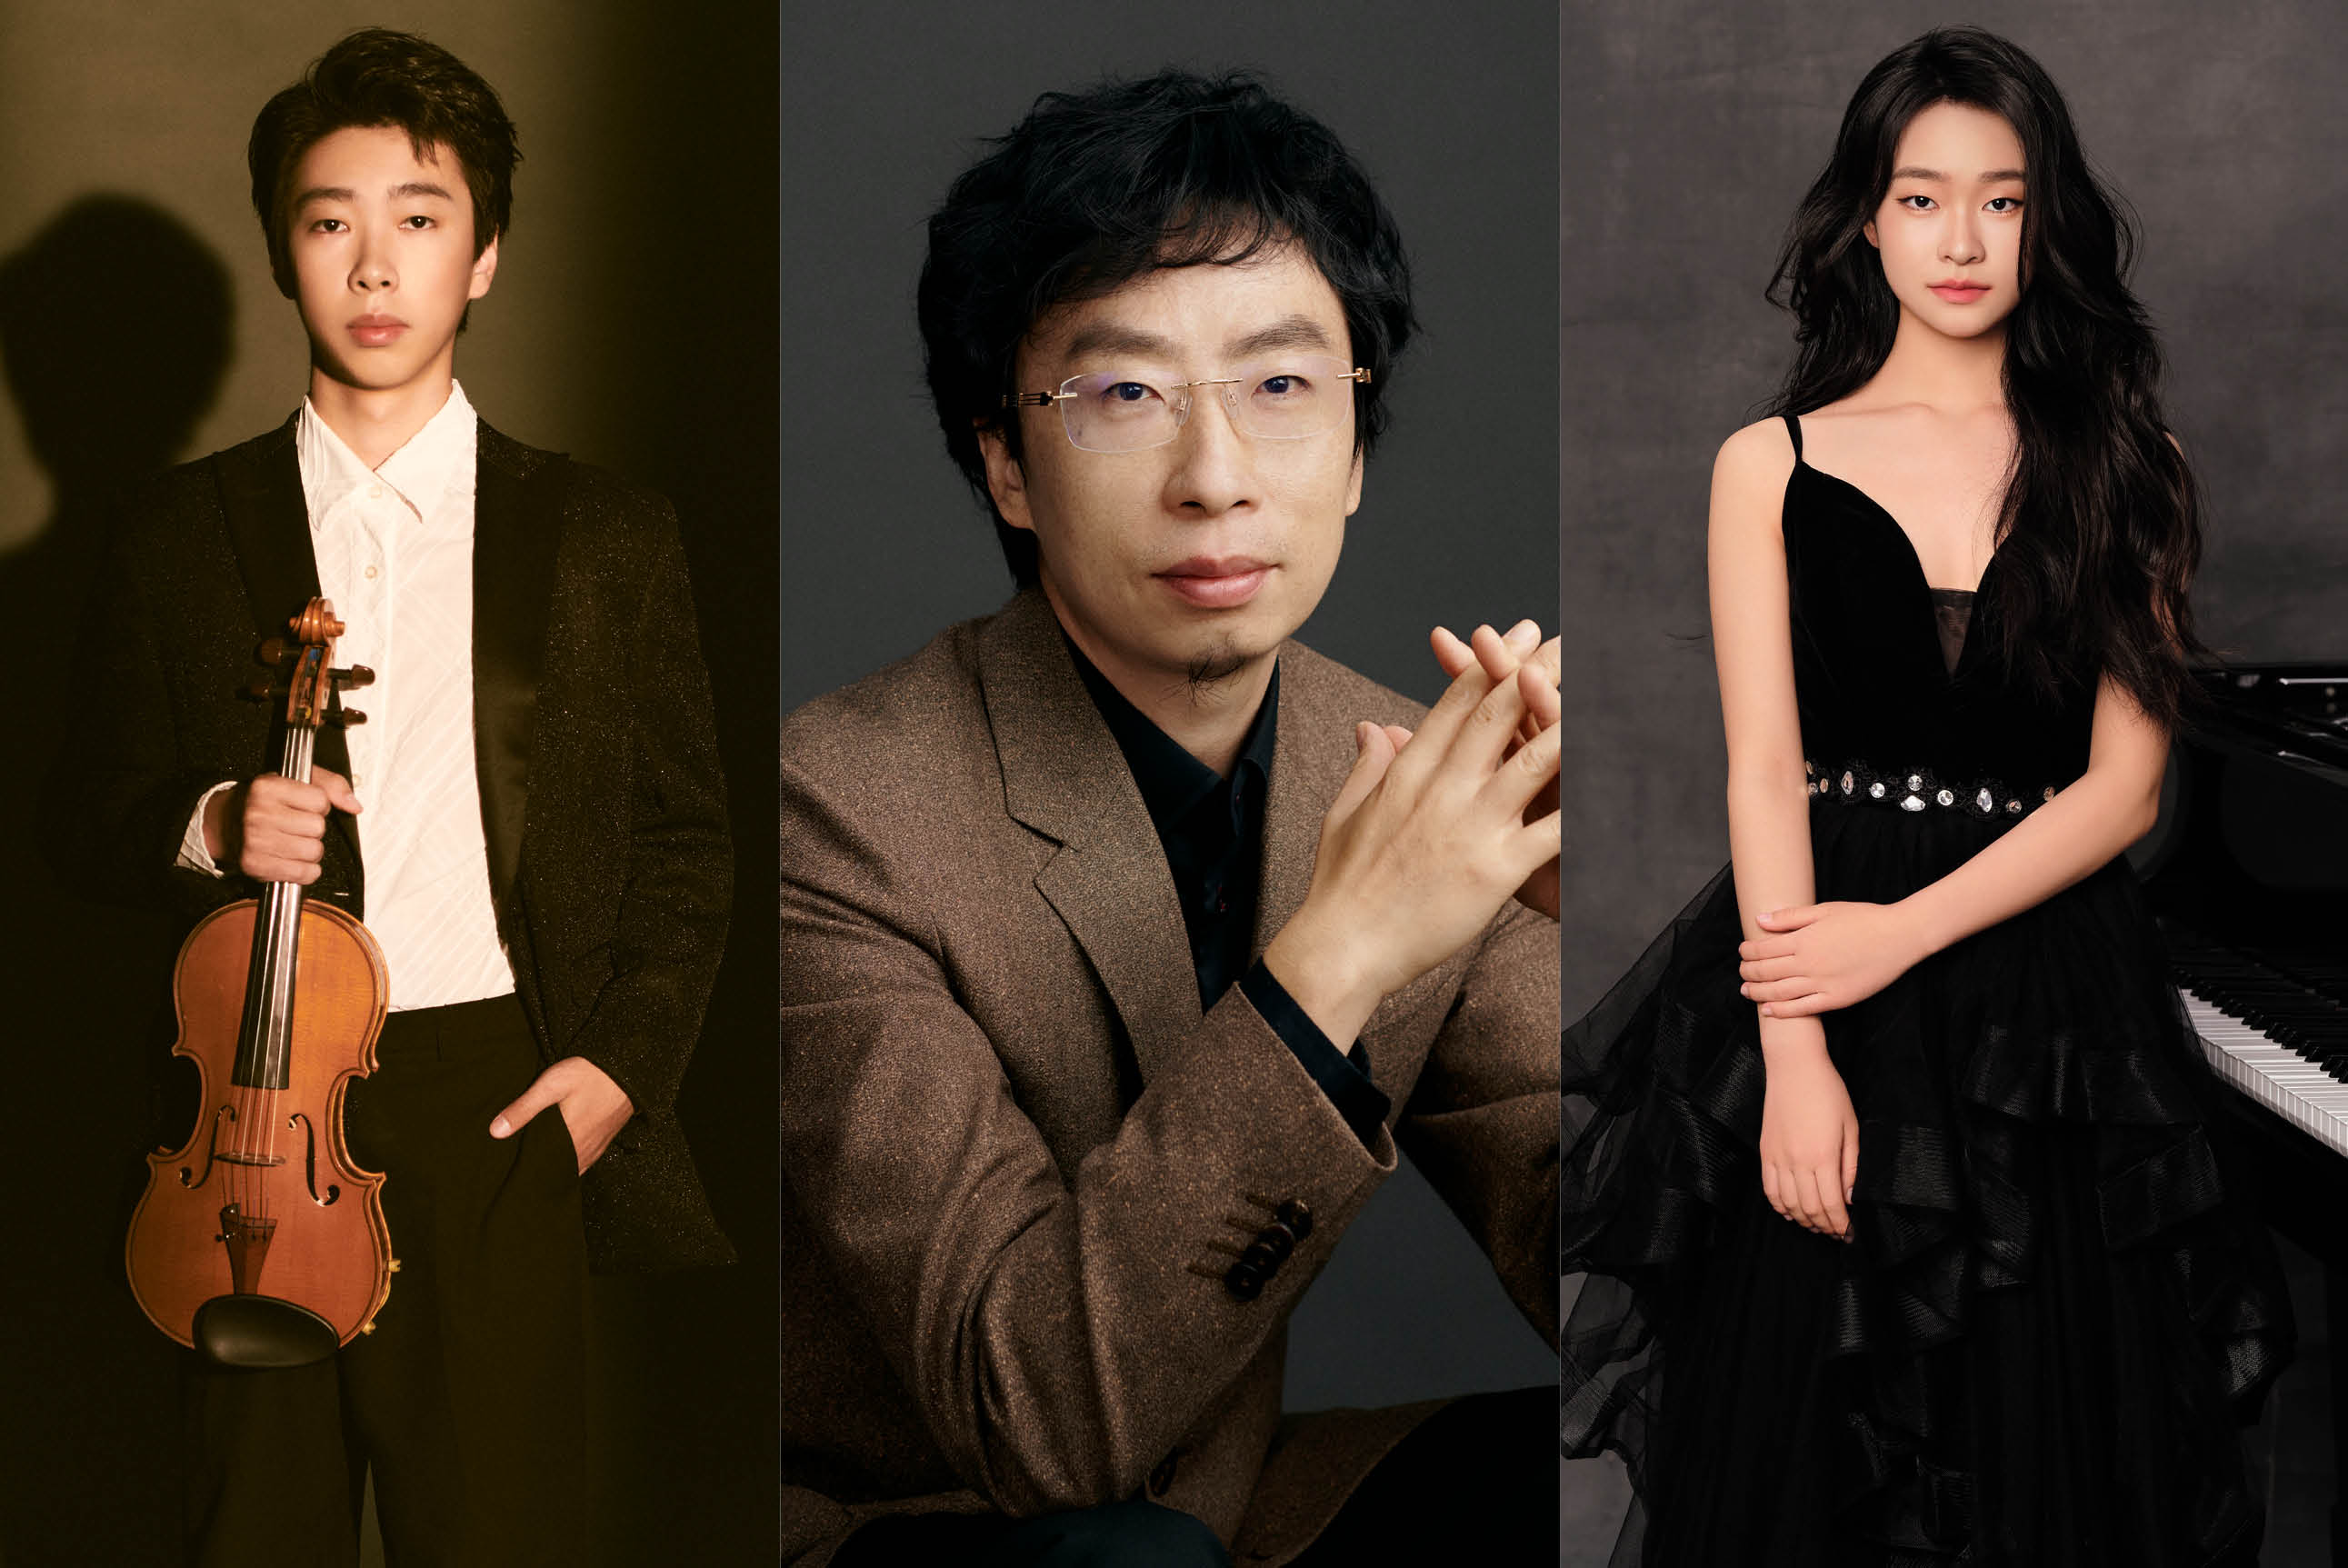 Montage of musicians, Yinbo Wang, Chun Wang and Kechun Wang